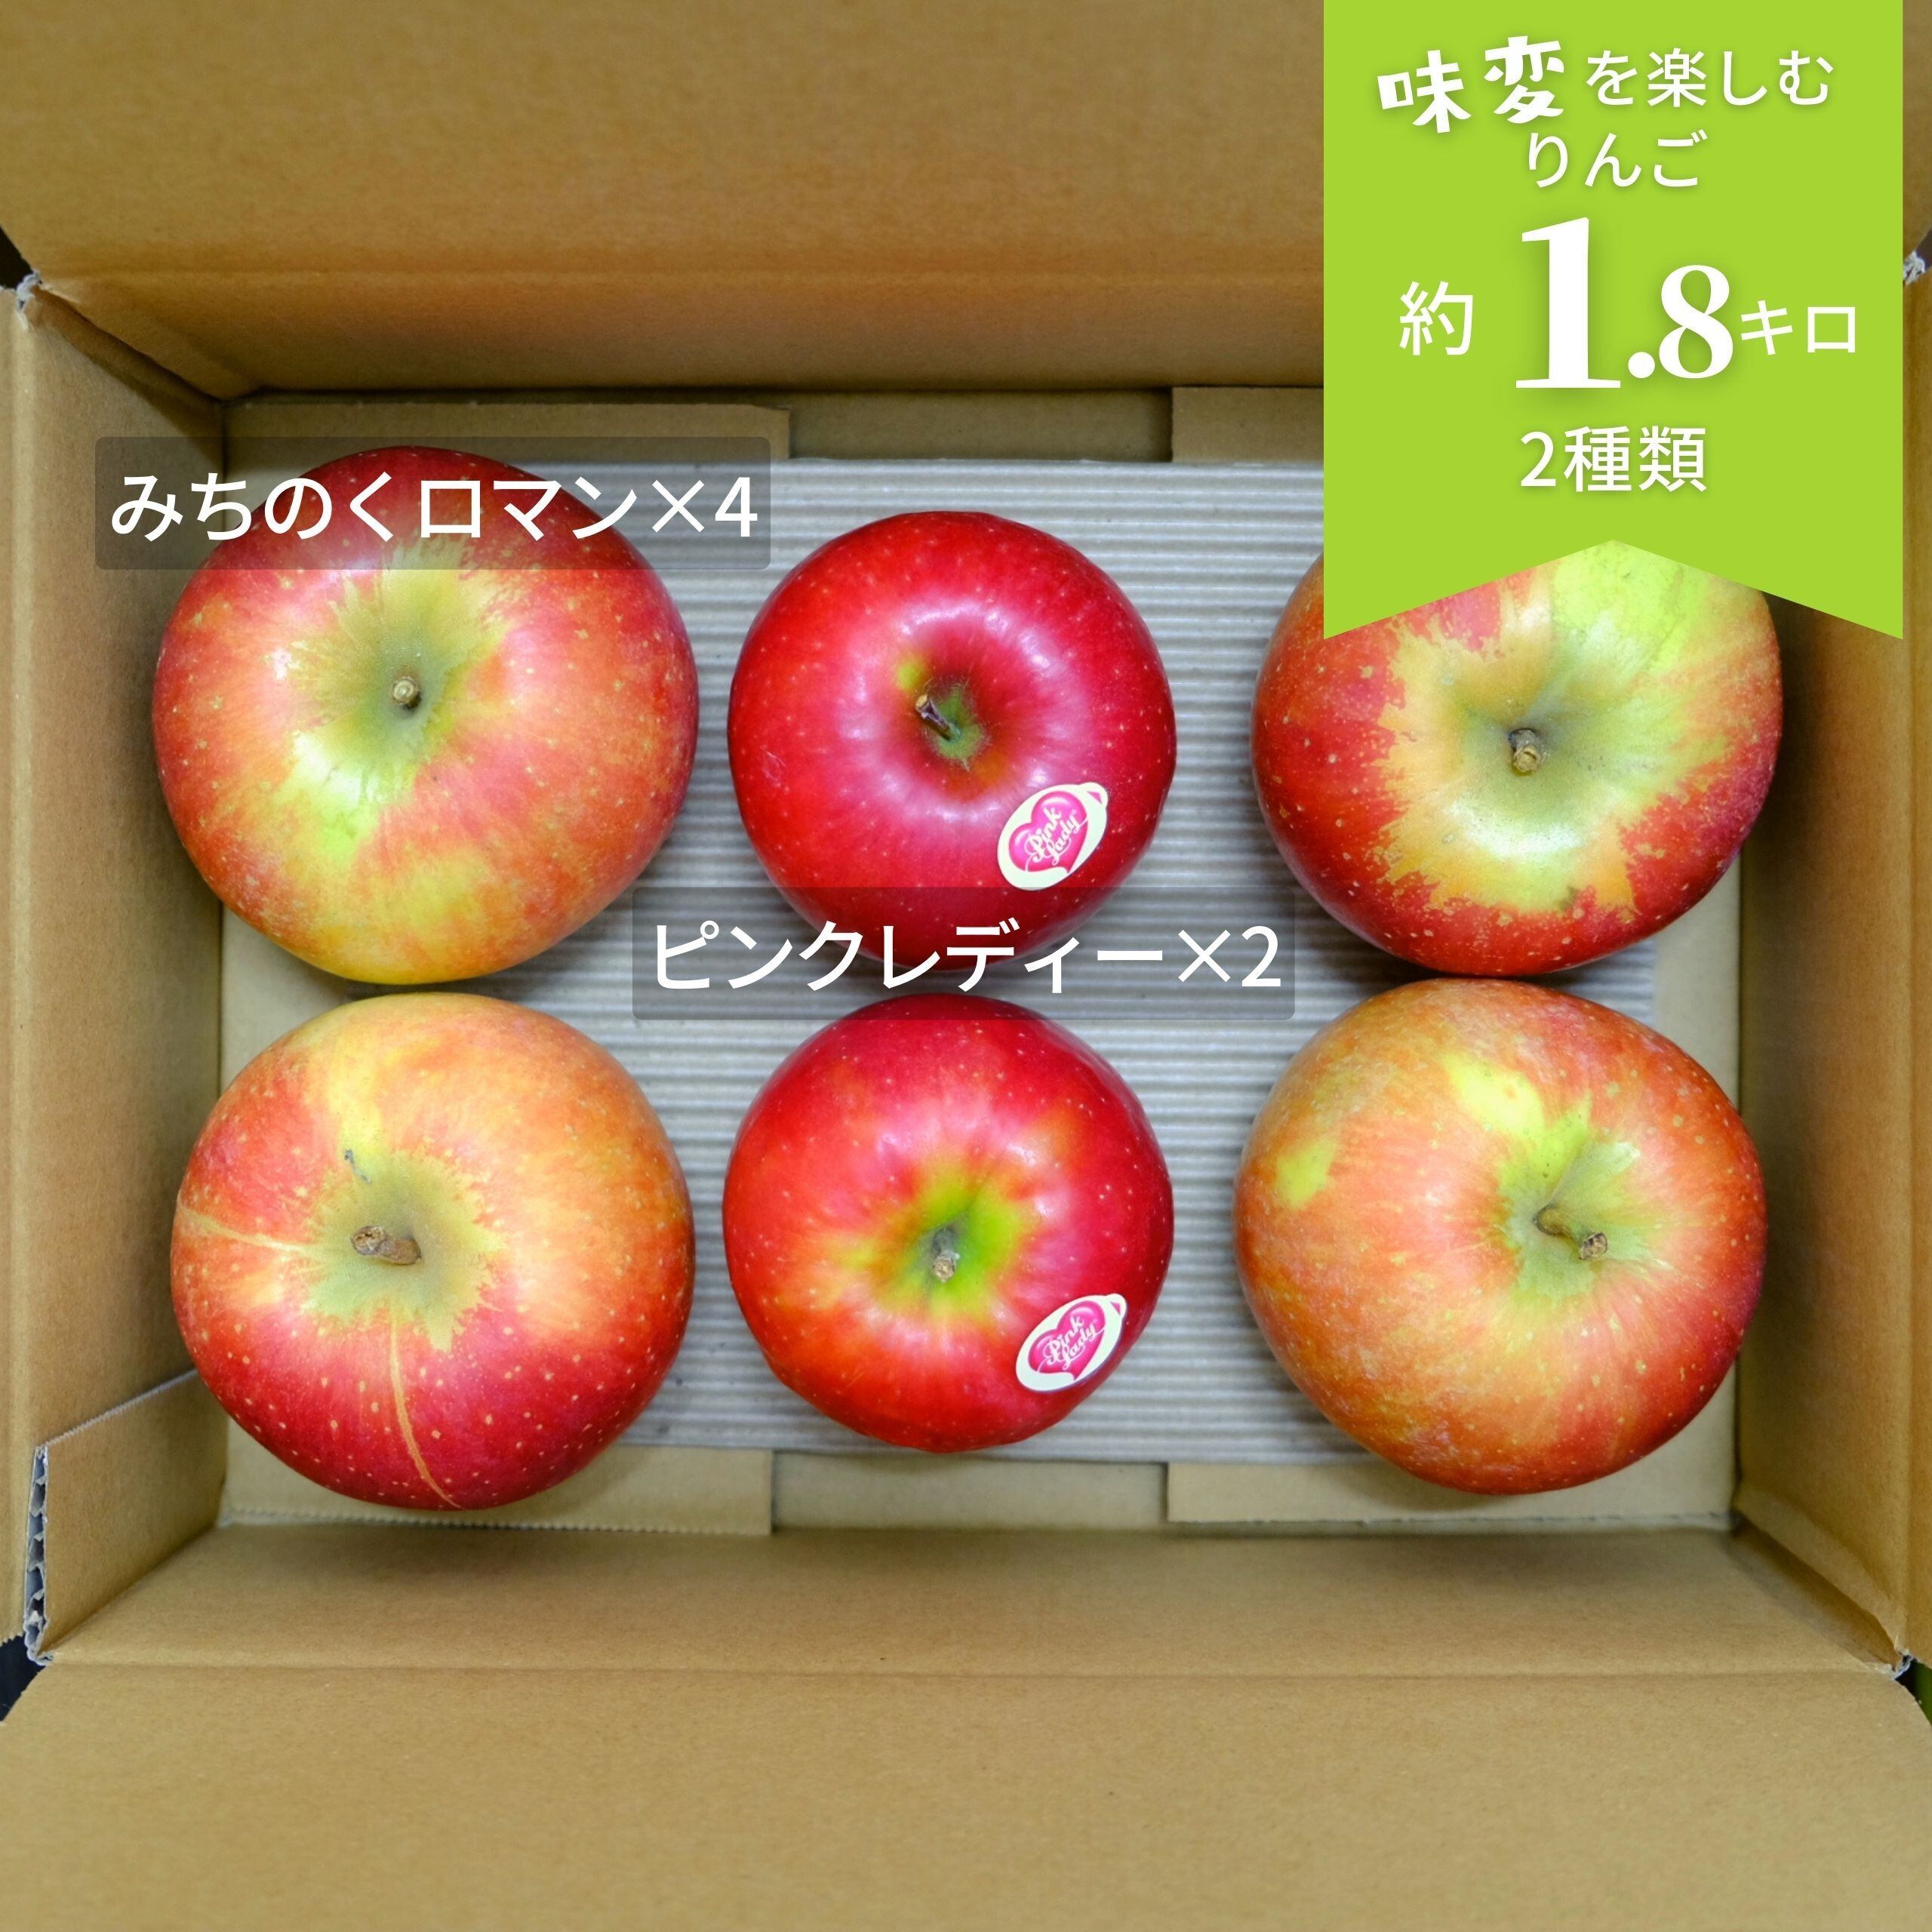 味の変化を楽しむ、すっぱいりんご2種（みちのくロマン、ピンク